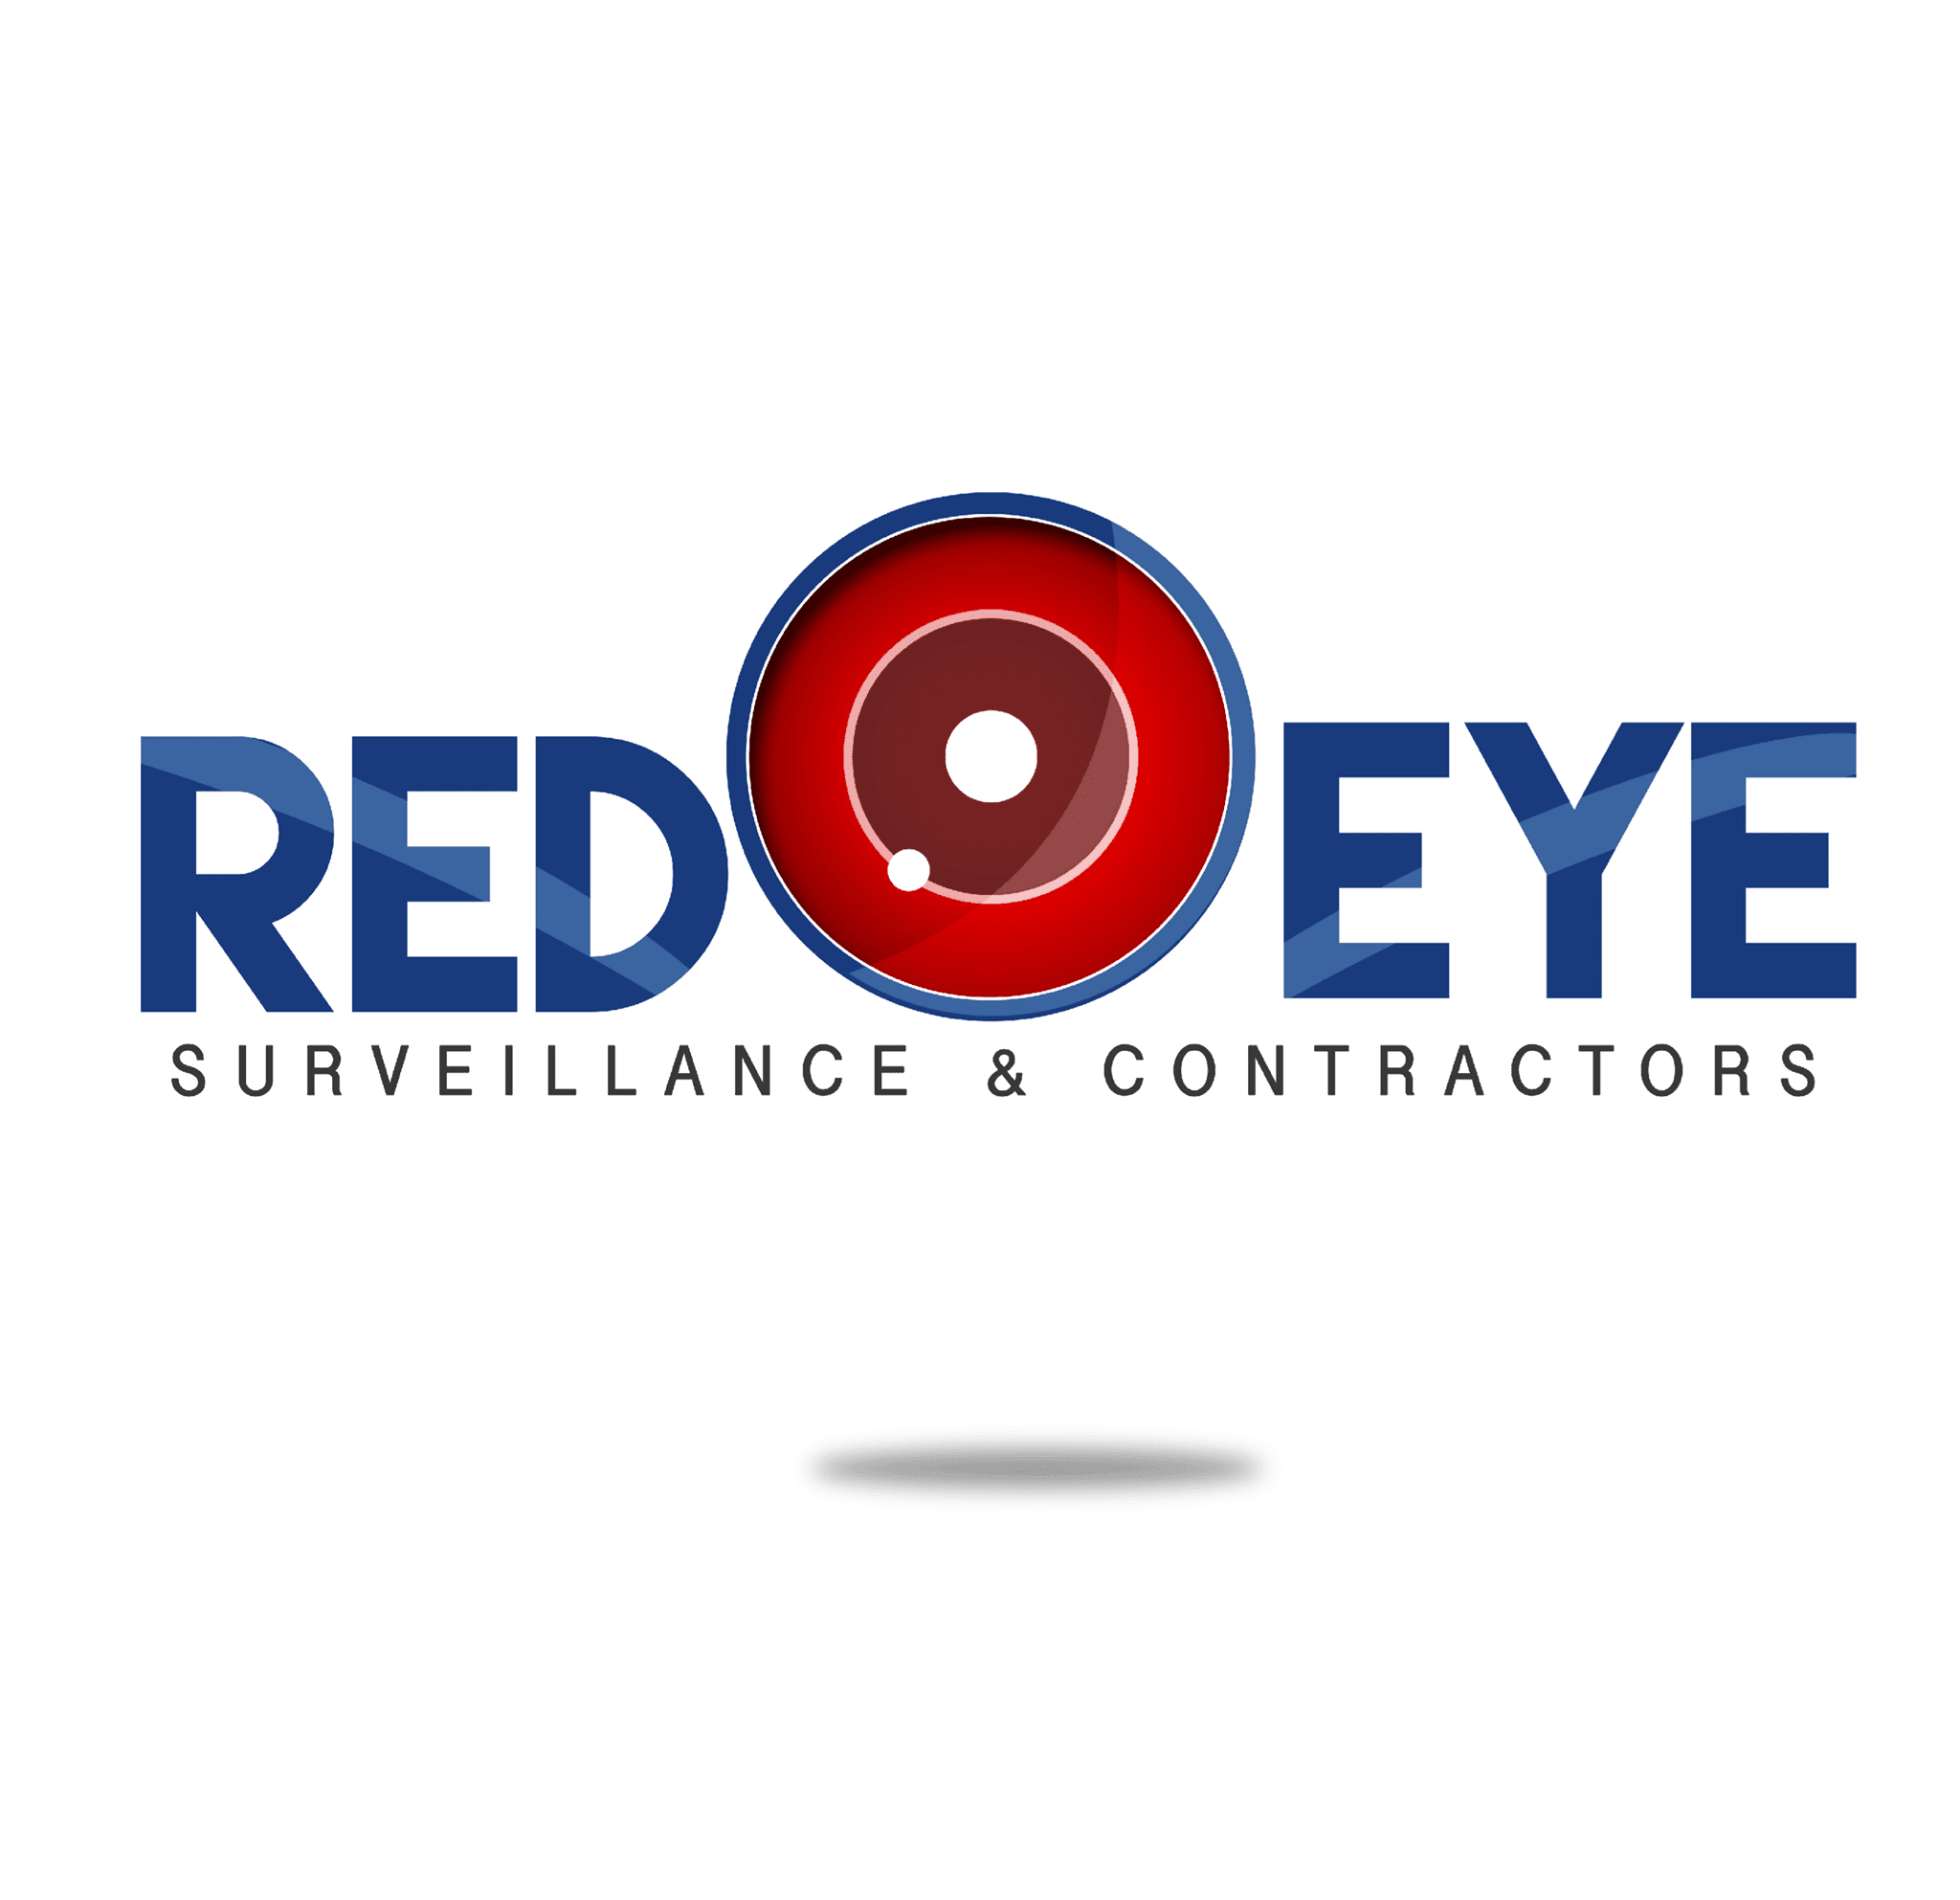 Red Eye Surveillance